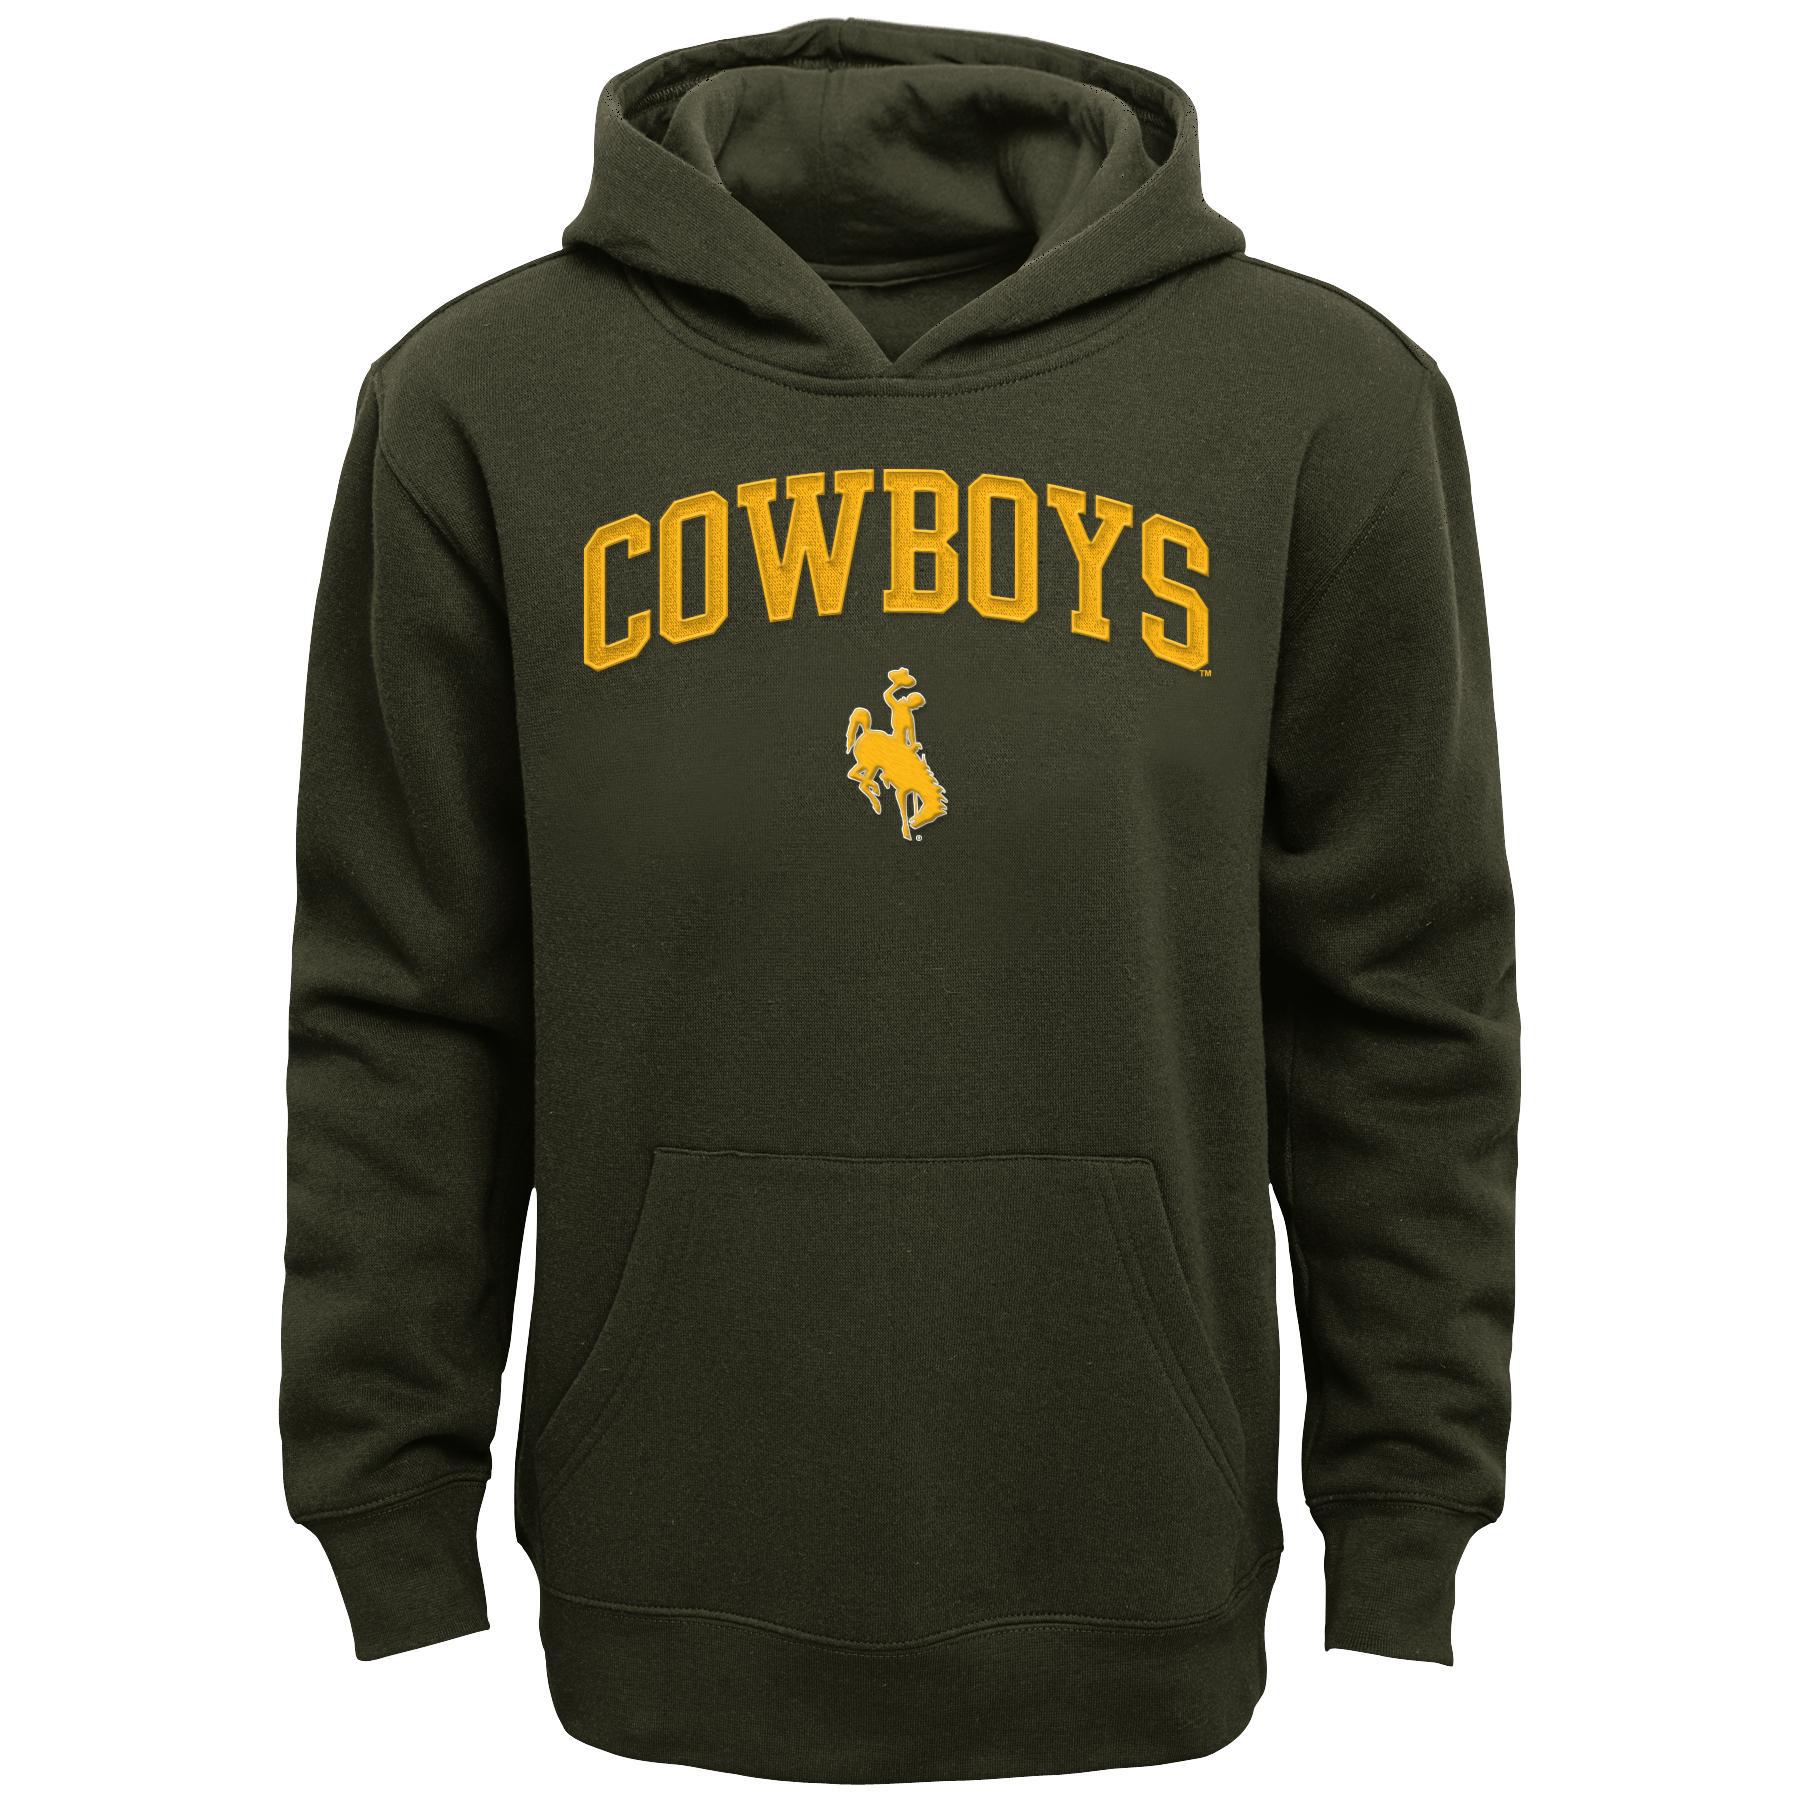 NCAA Boys' Hoodie - University of Wyoming Cowboys